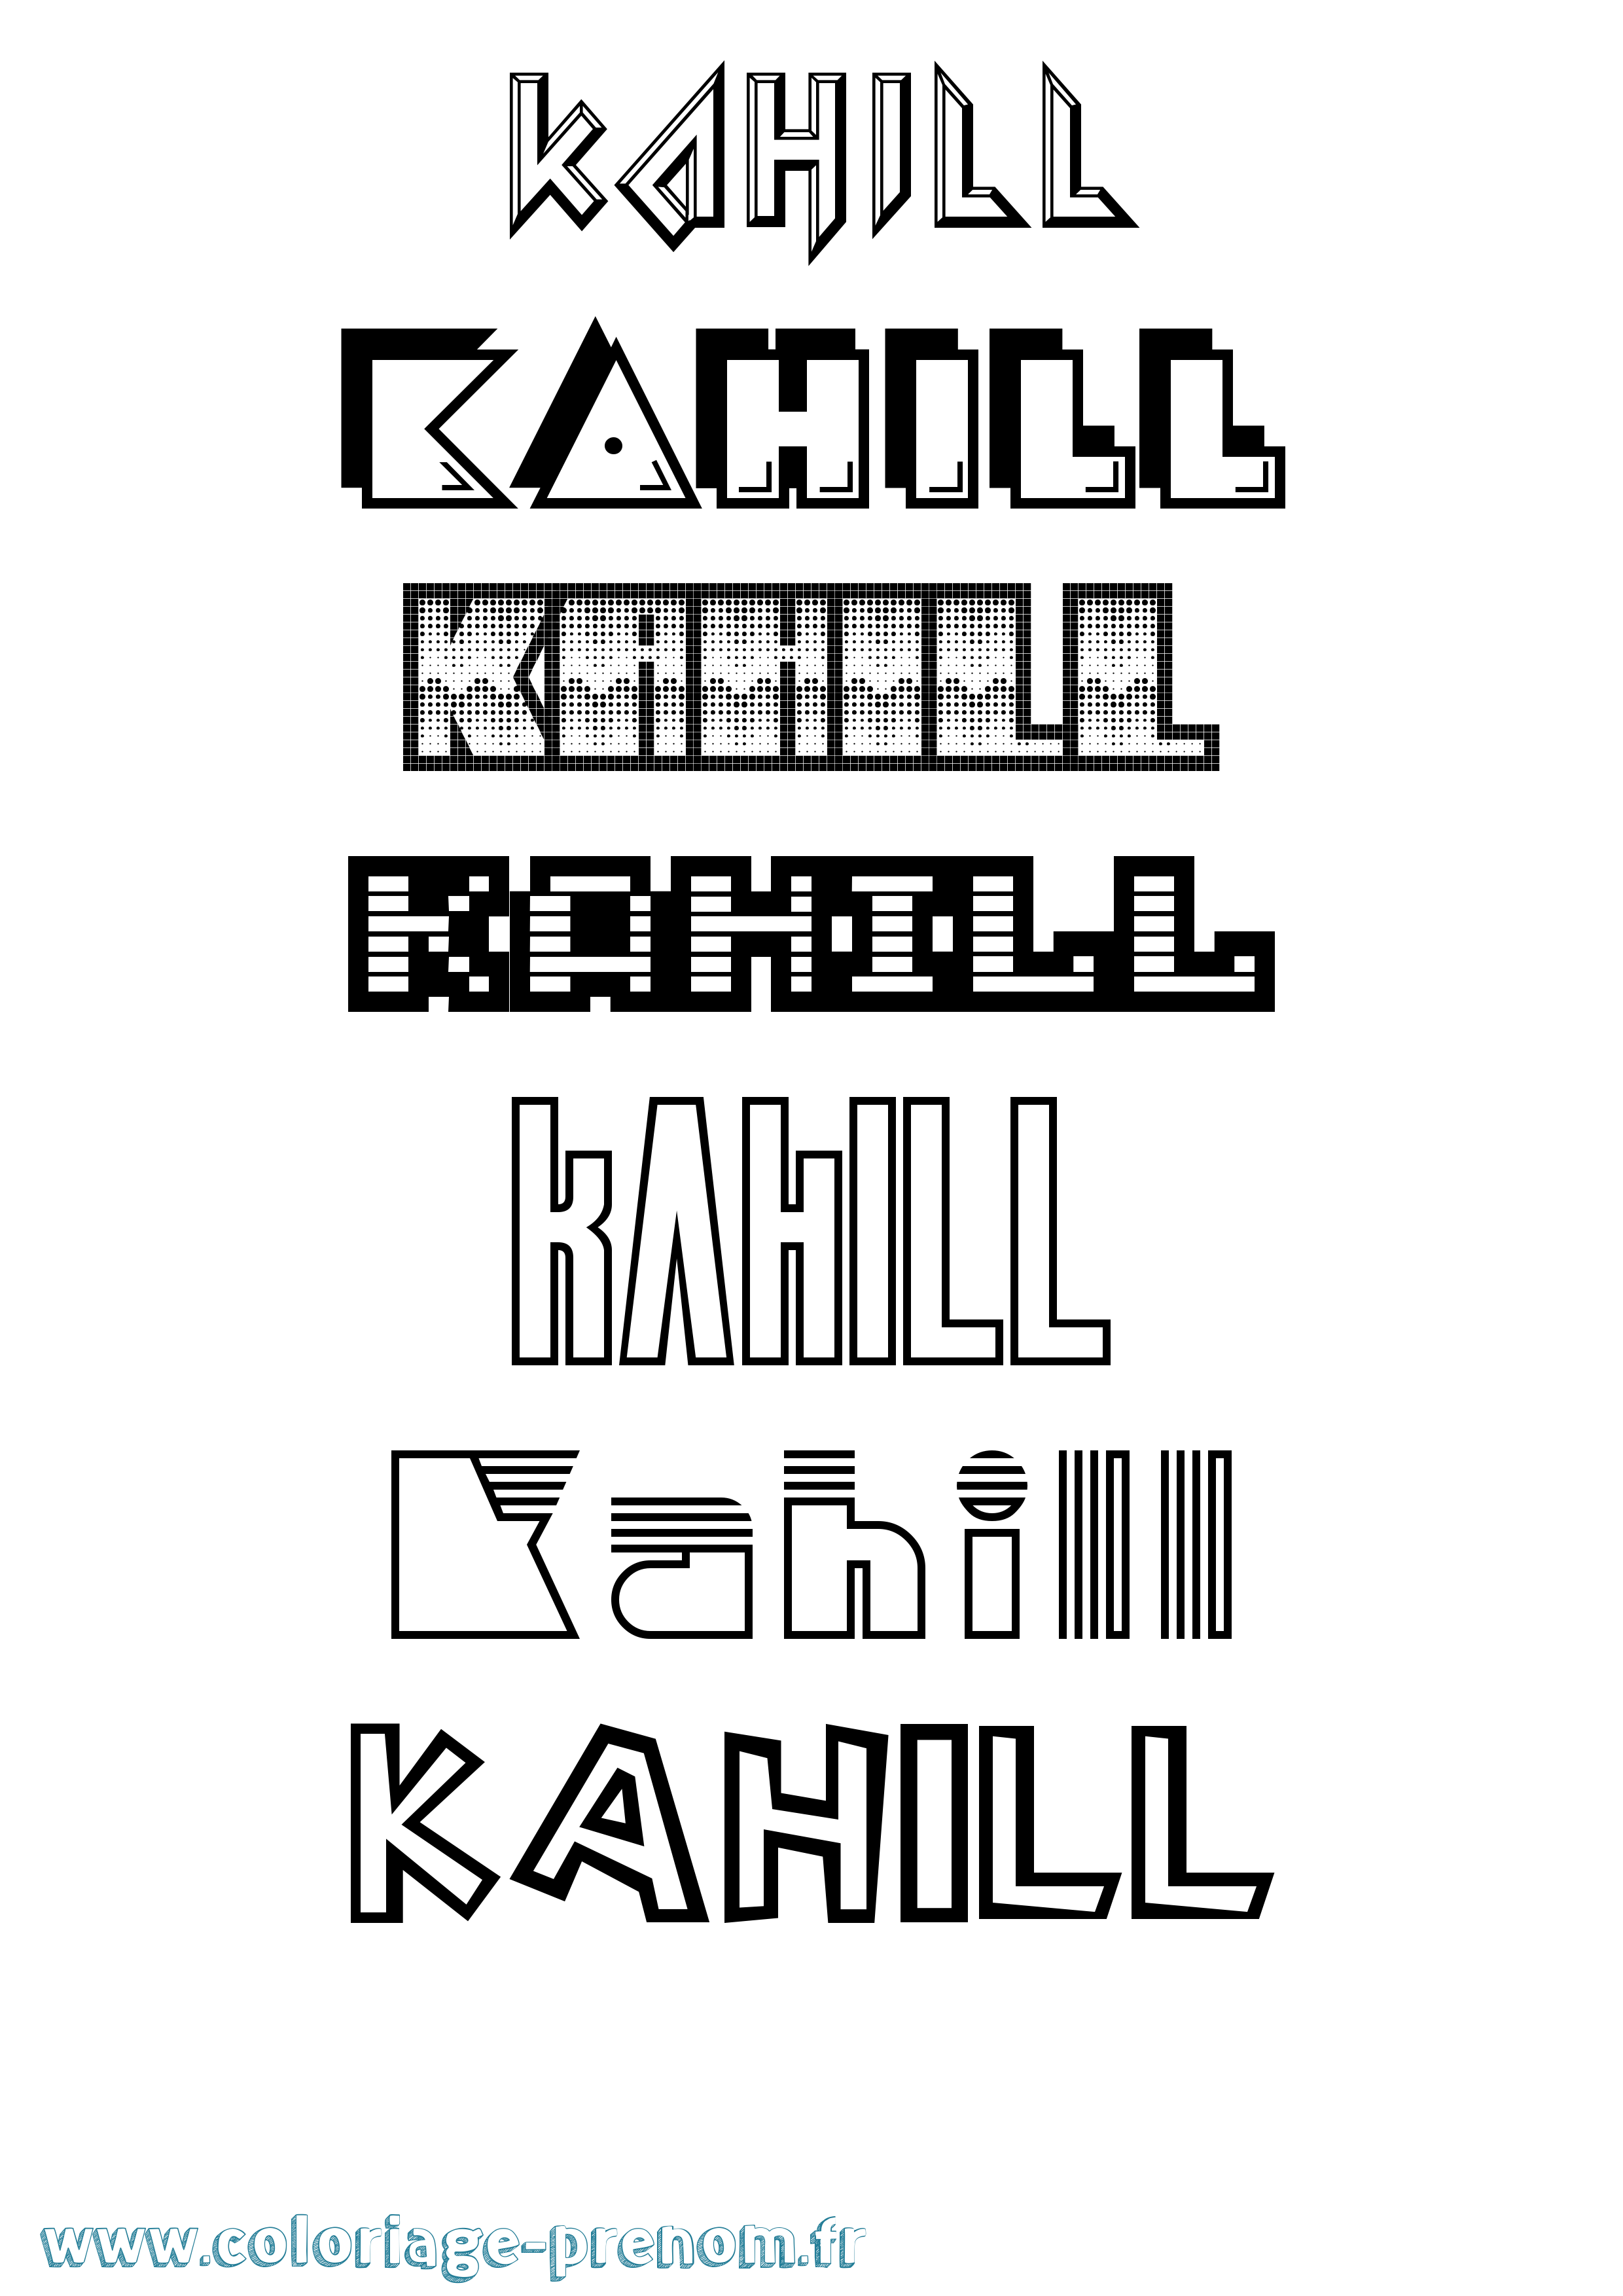 Coloriage prénom Kahill Jeux Vidéos